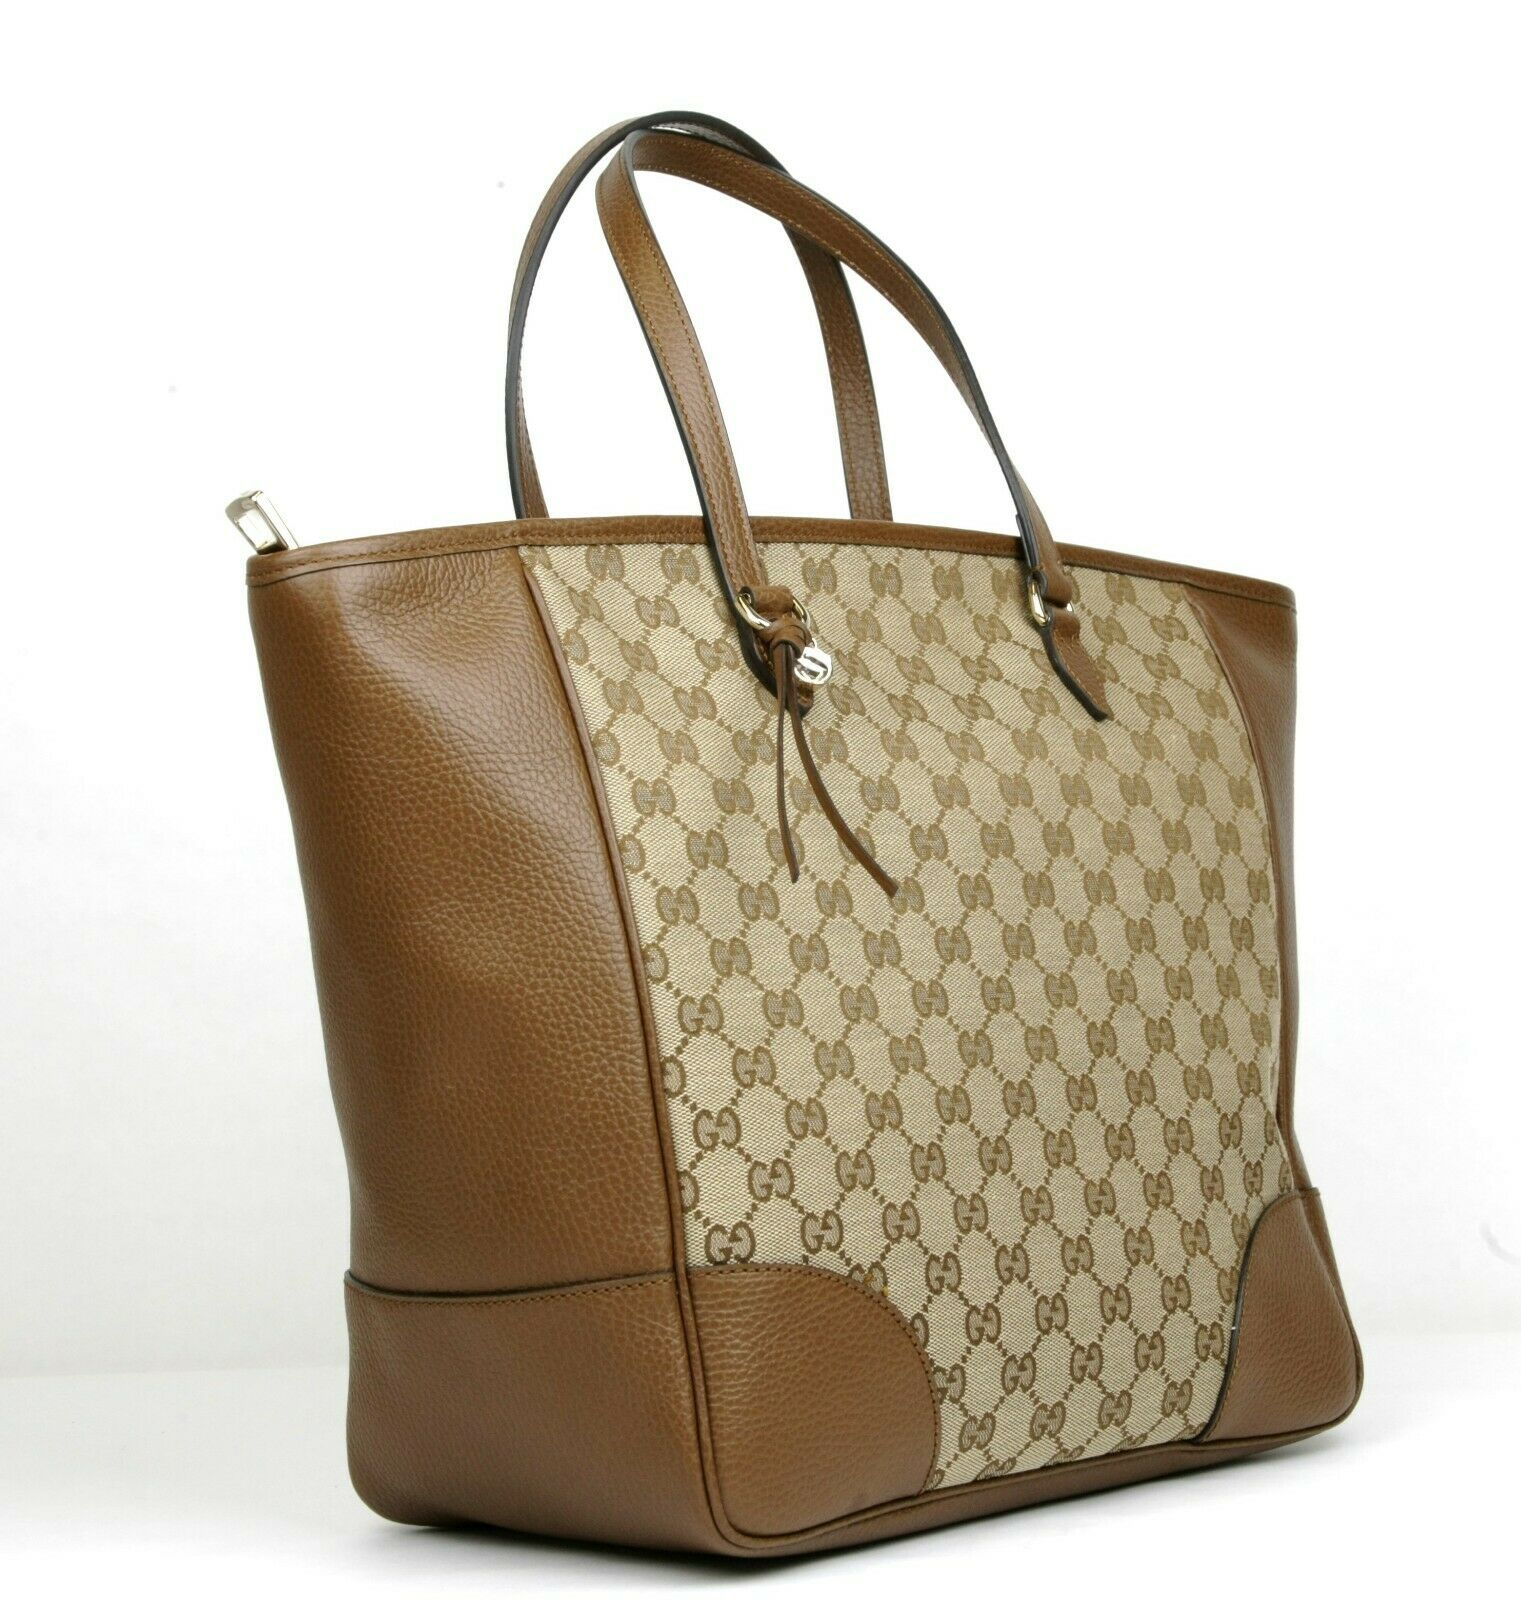 Totes bags Gucci - Bree Original GG canvas top handle bag